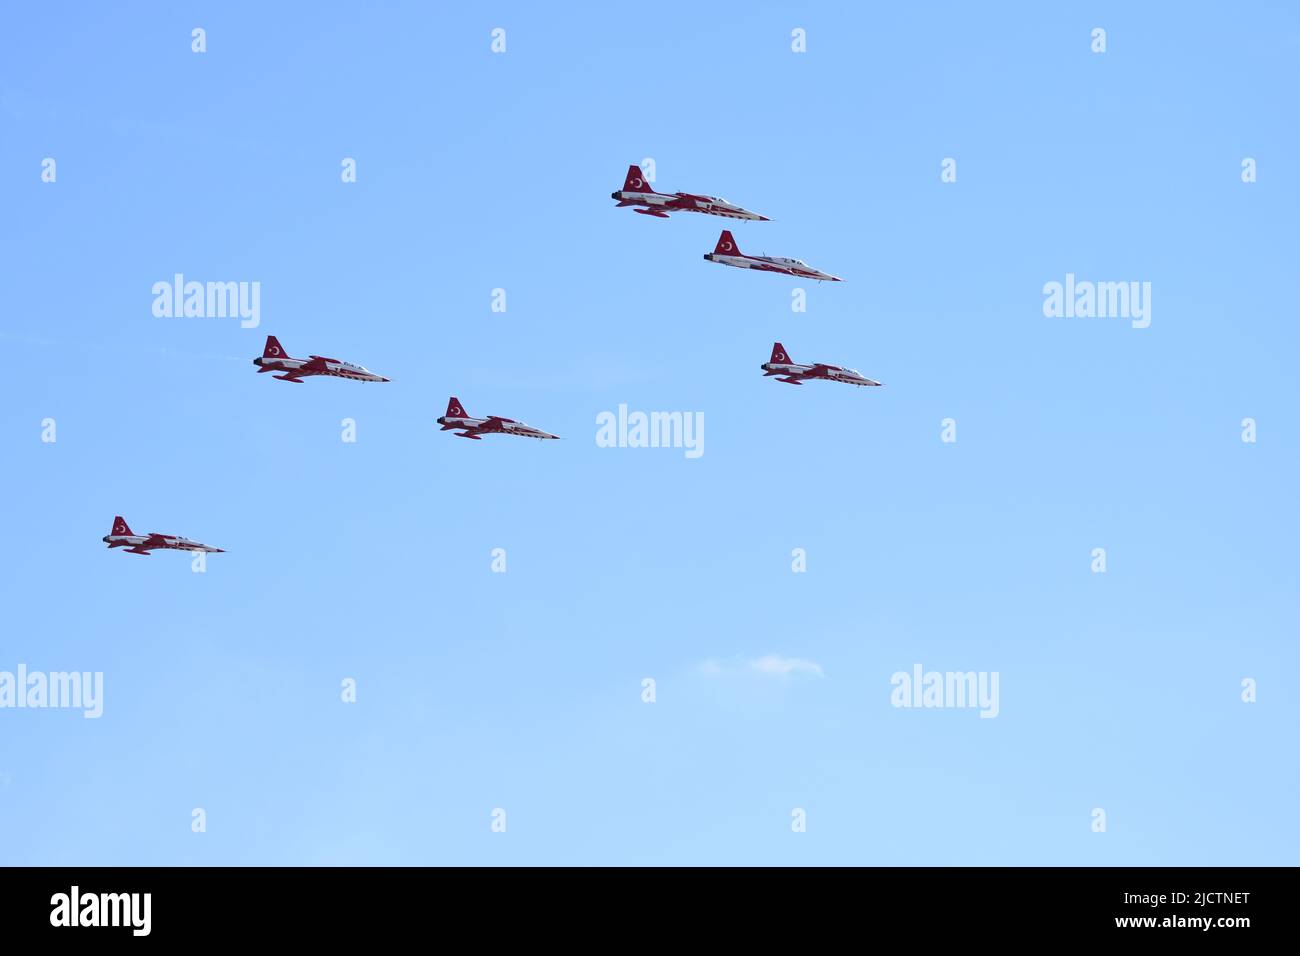 Estambul TURQUÍA 24 09 2021 Las estrellas turcas son el equipo de demostración acrobática de la Fuerza Aérea Turca y el equipo nacional de acrobacias aéreas de Turquía. Foto de stock